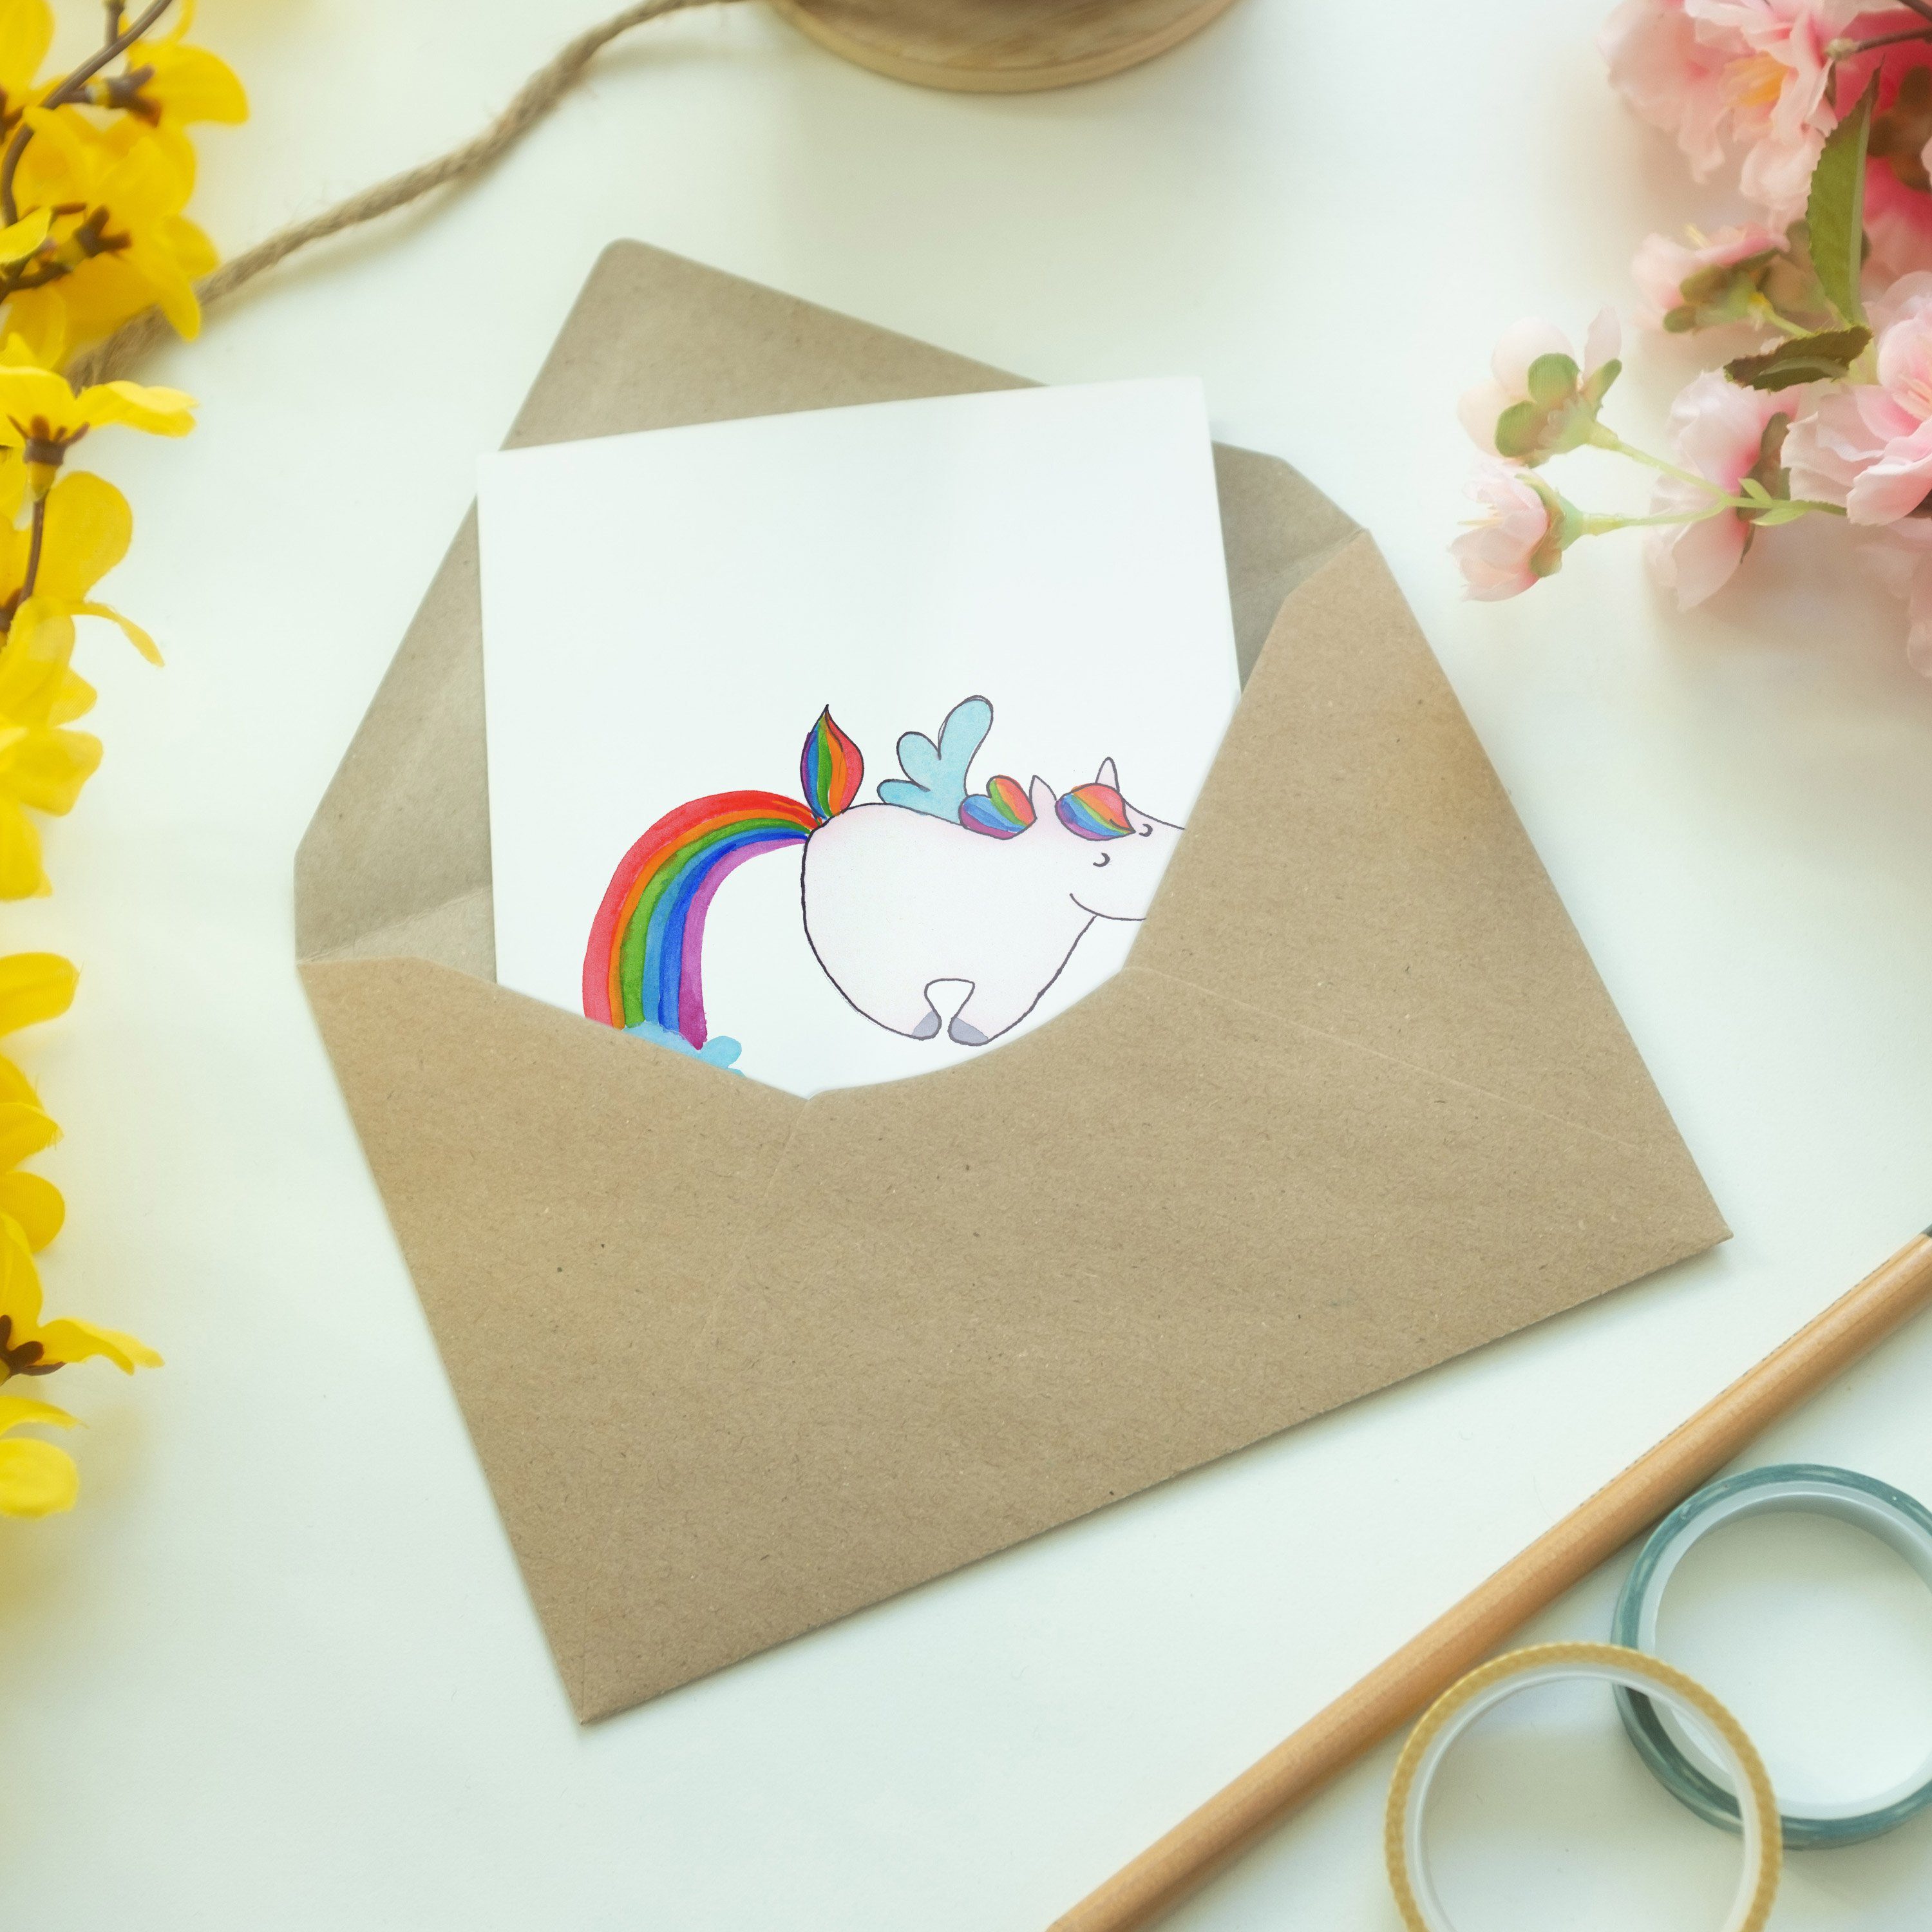 Mr. & Mrs. Panda Grußkarte - - Weiß Karte, Geschenk, Pegasus Realität Geburtstagskarte, Einhorn